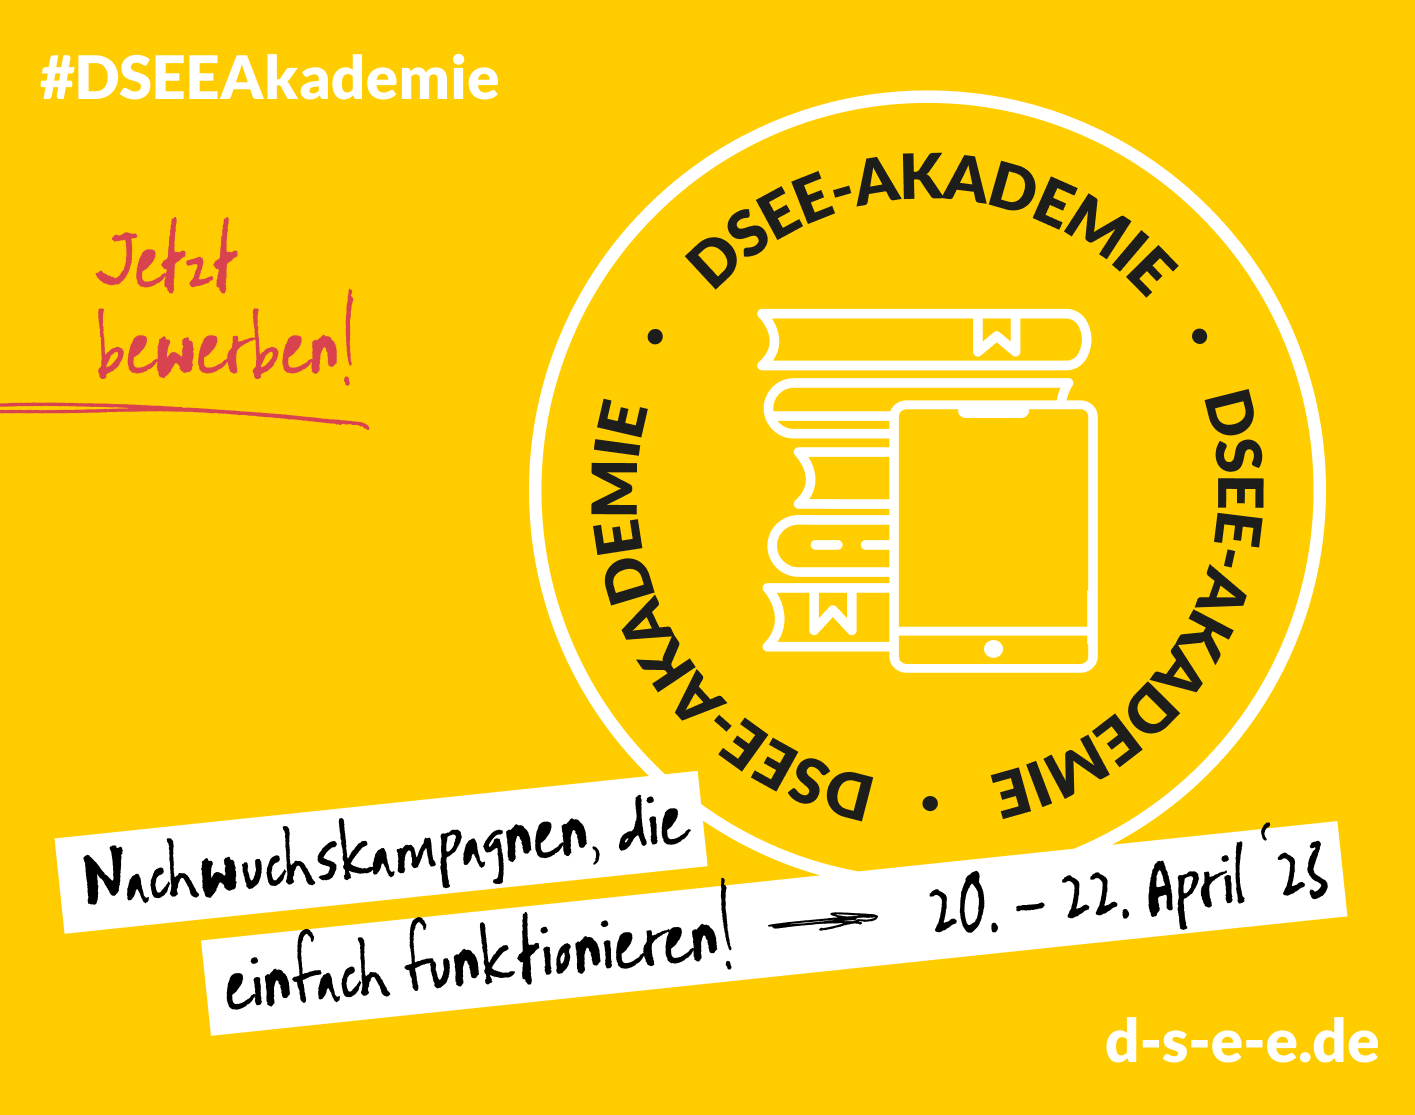 Grafik mit dem Text: #DSEE-Akademie Jetzt bewerben! Nachwuchskampagnen, die einfach funktionieren. 20.-22. April 23